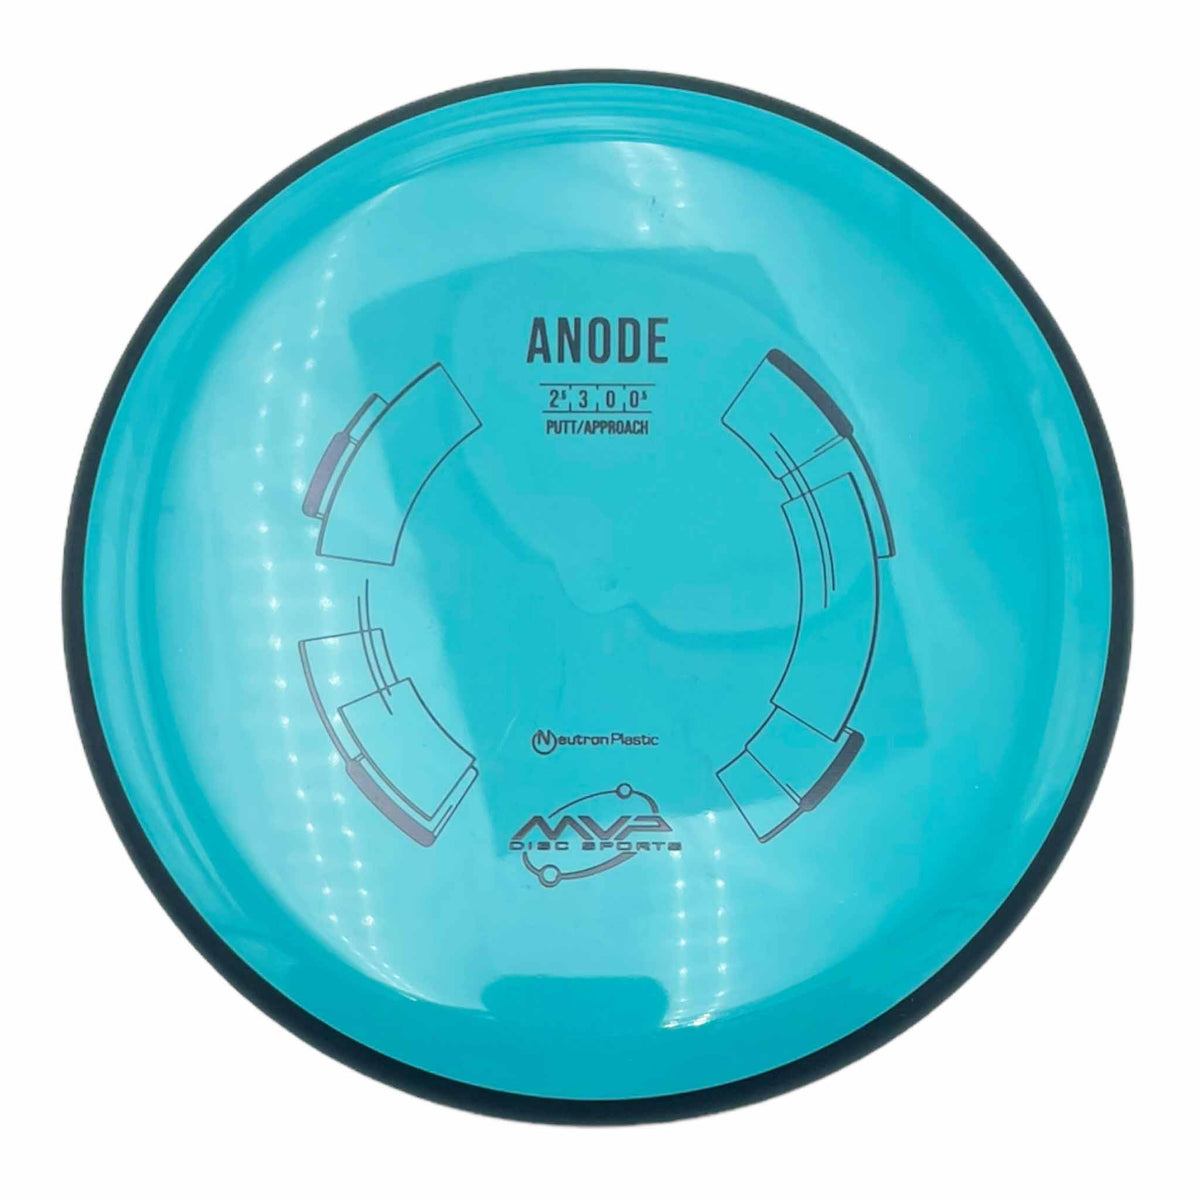 MVP Disc Sports Neutron Anode putter and approach - Blue